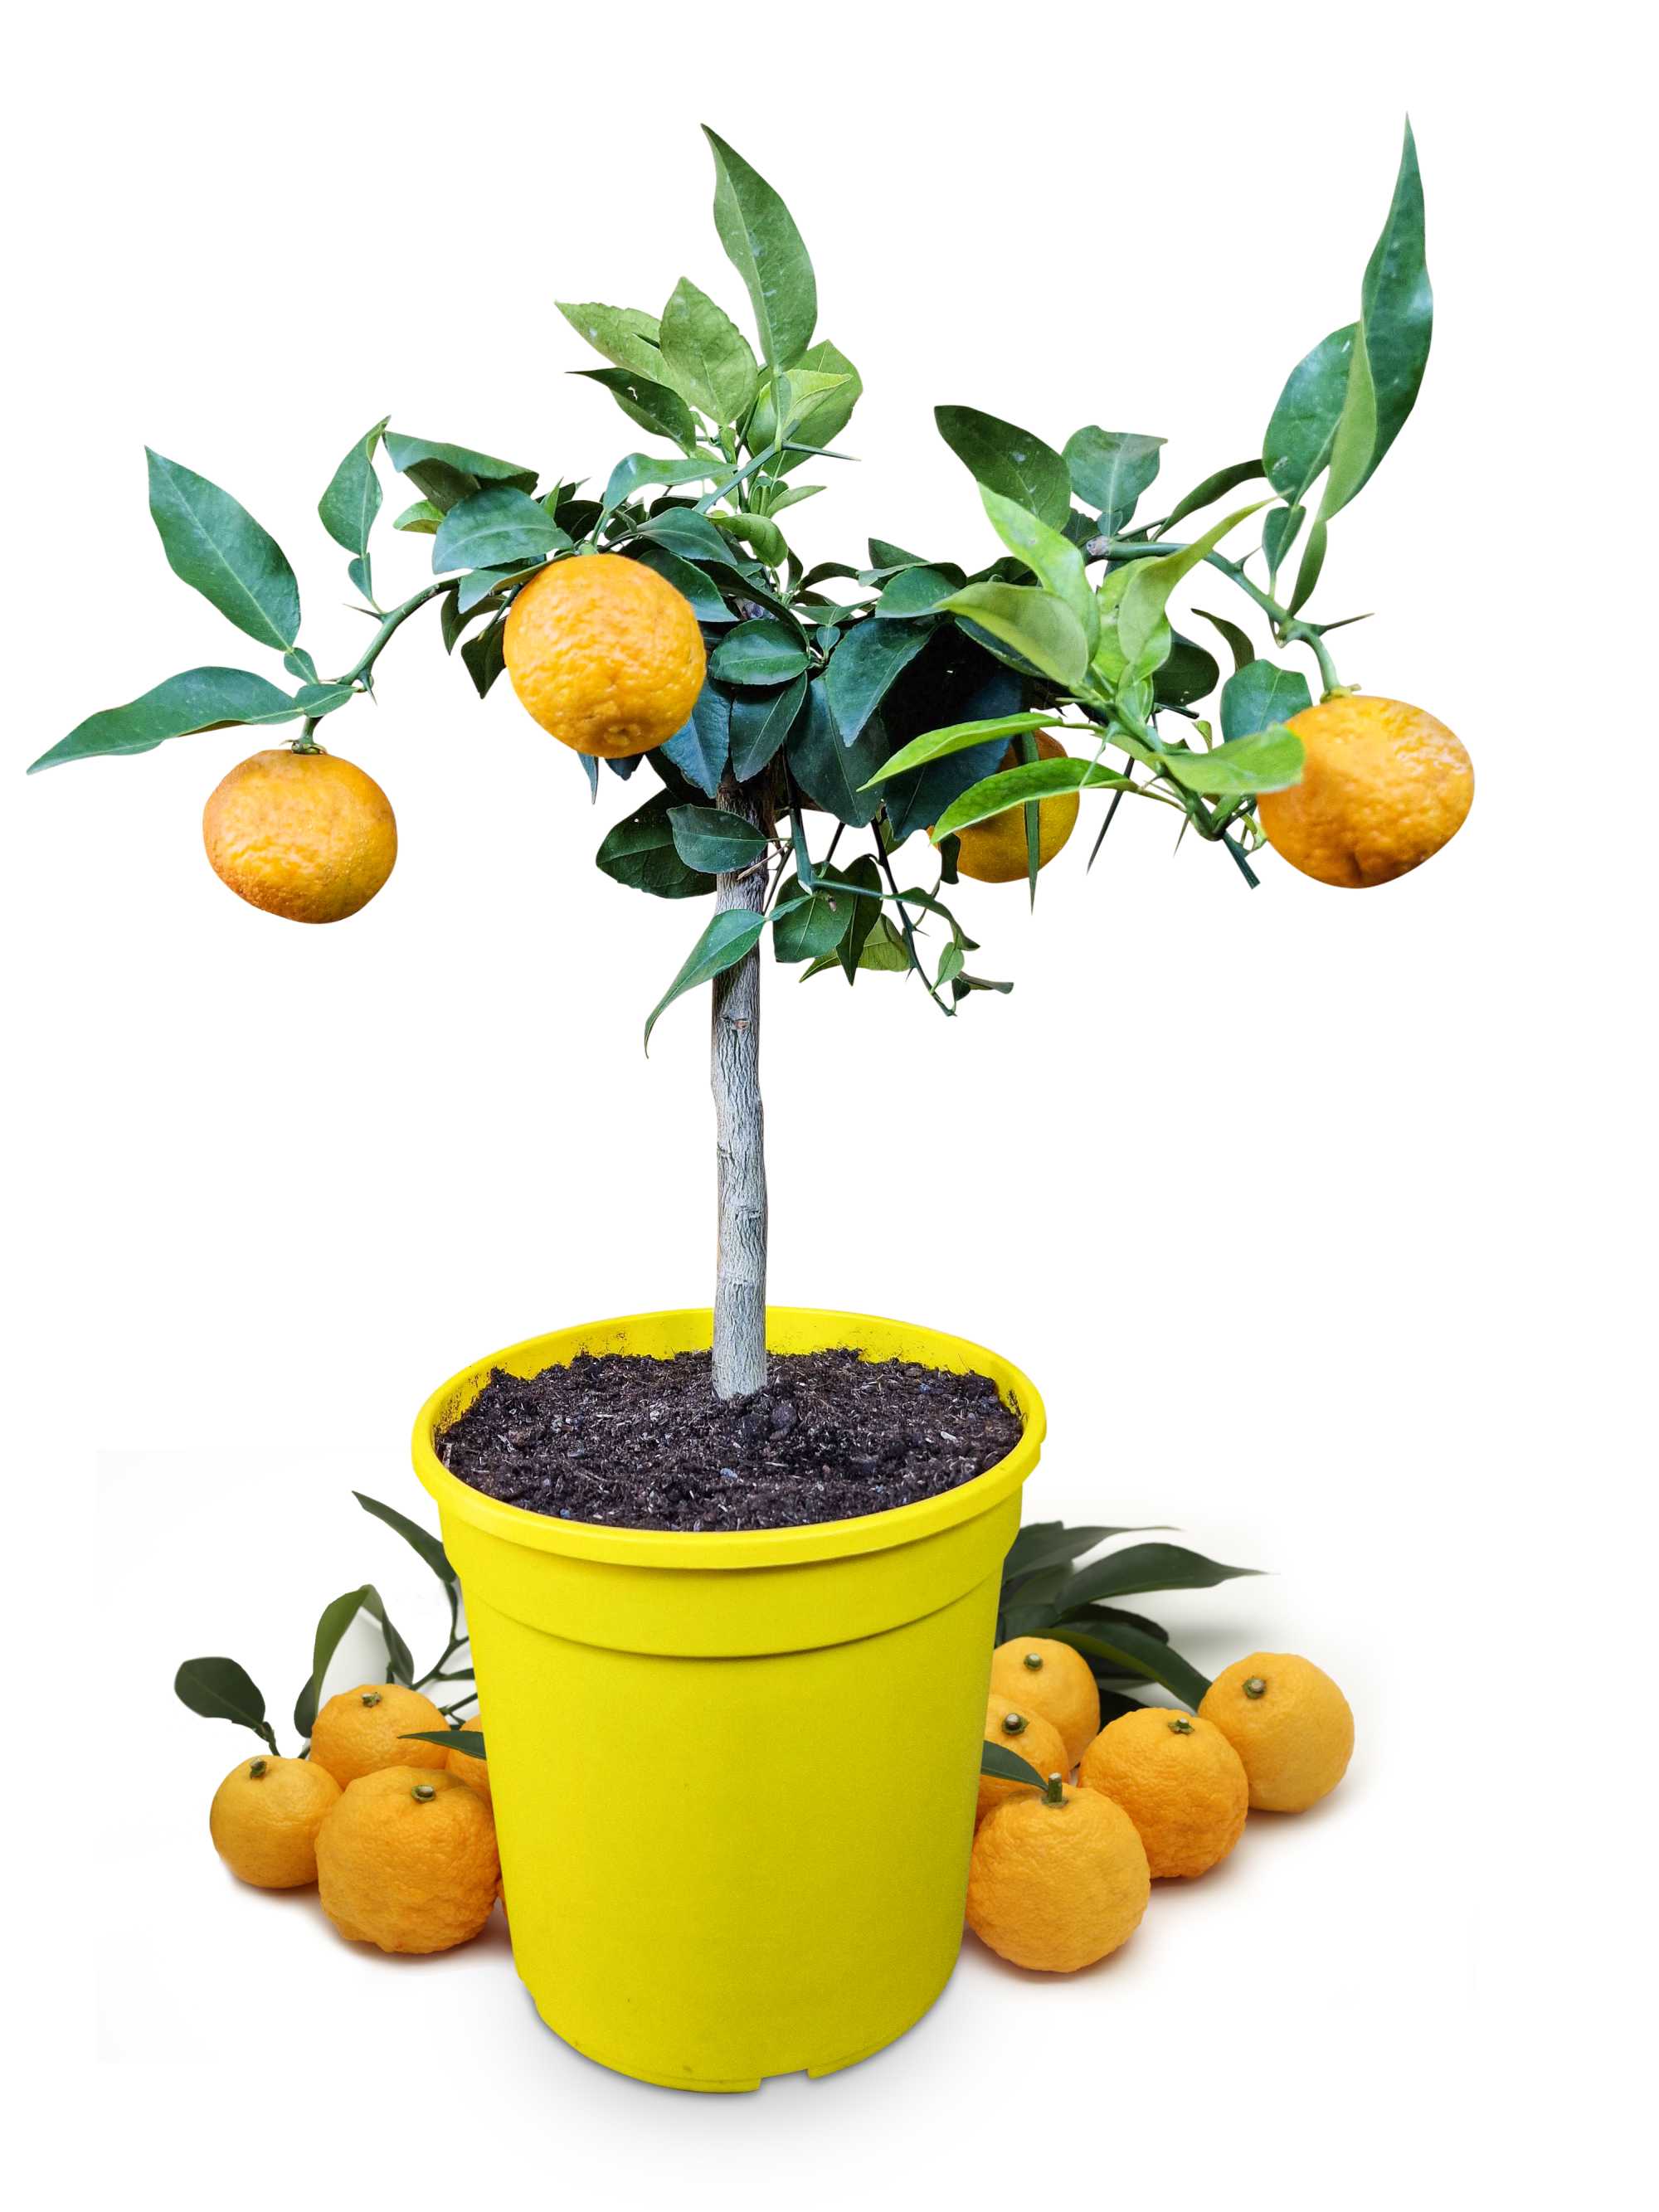 Yuzu [Mezzo] - Citrus junos -  'Citrus ichangensis × Citrus reticulata'